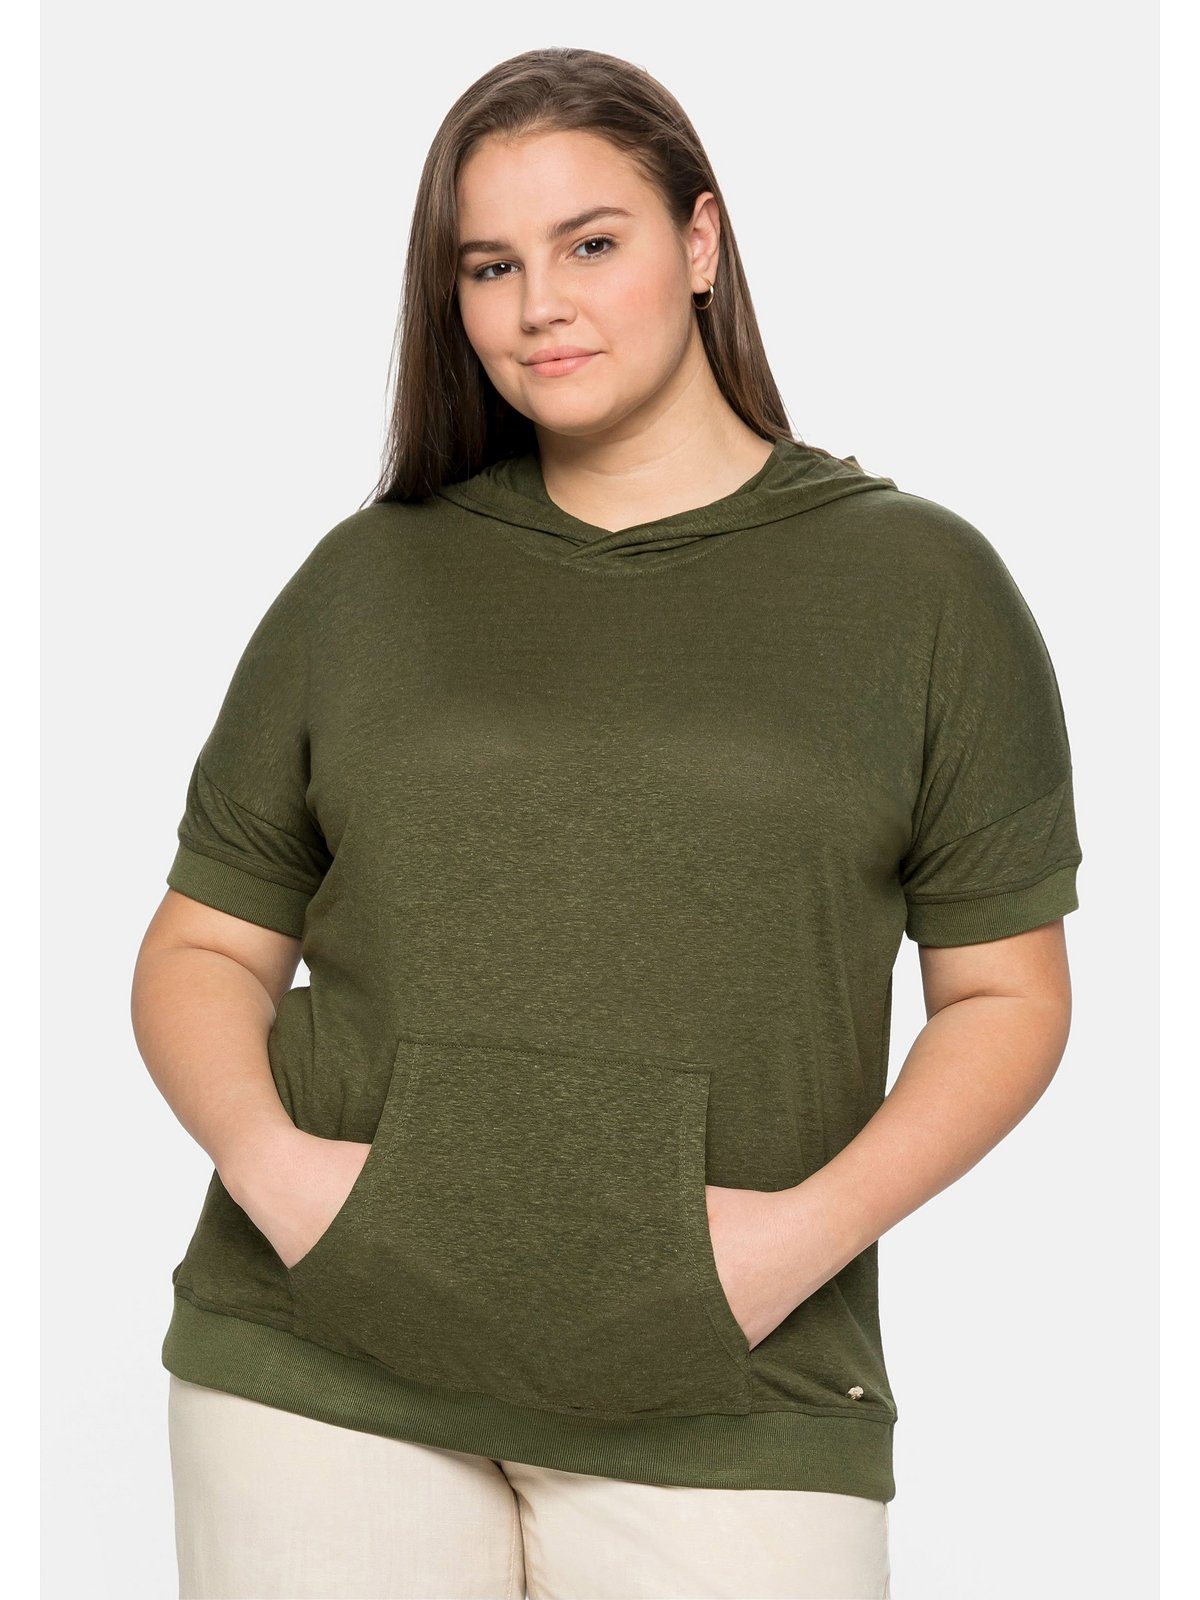 [Das Beste der Branche] Sheego T-Shirt Große Größen mit Kapuze, Leinen-Baumwoll-Mix im